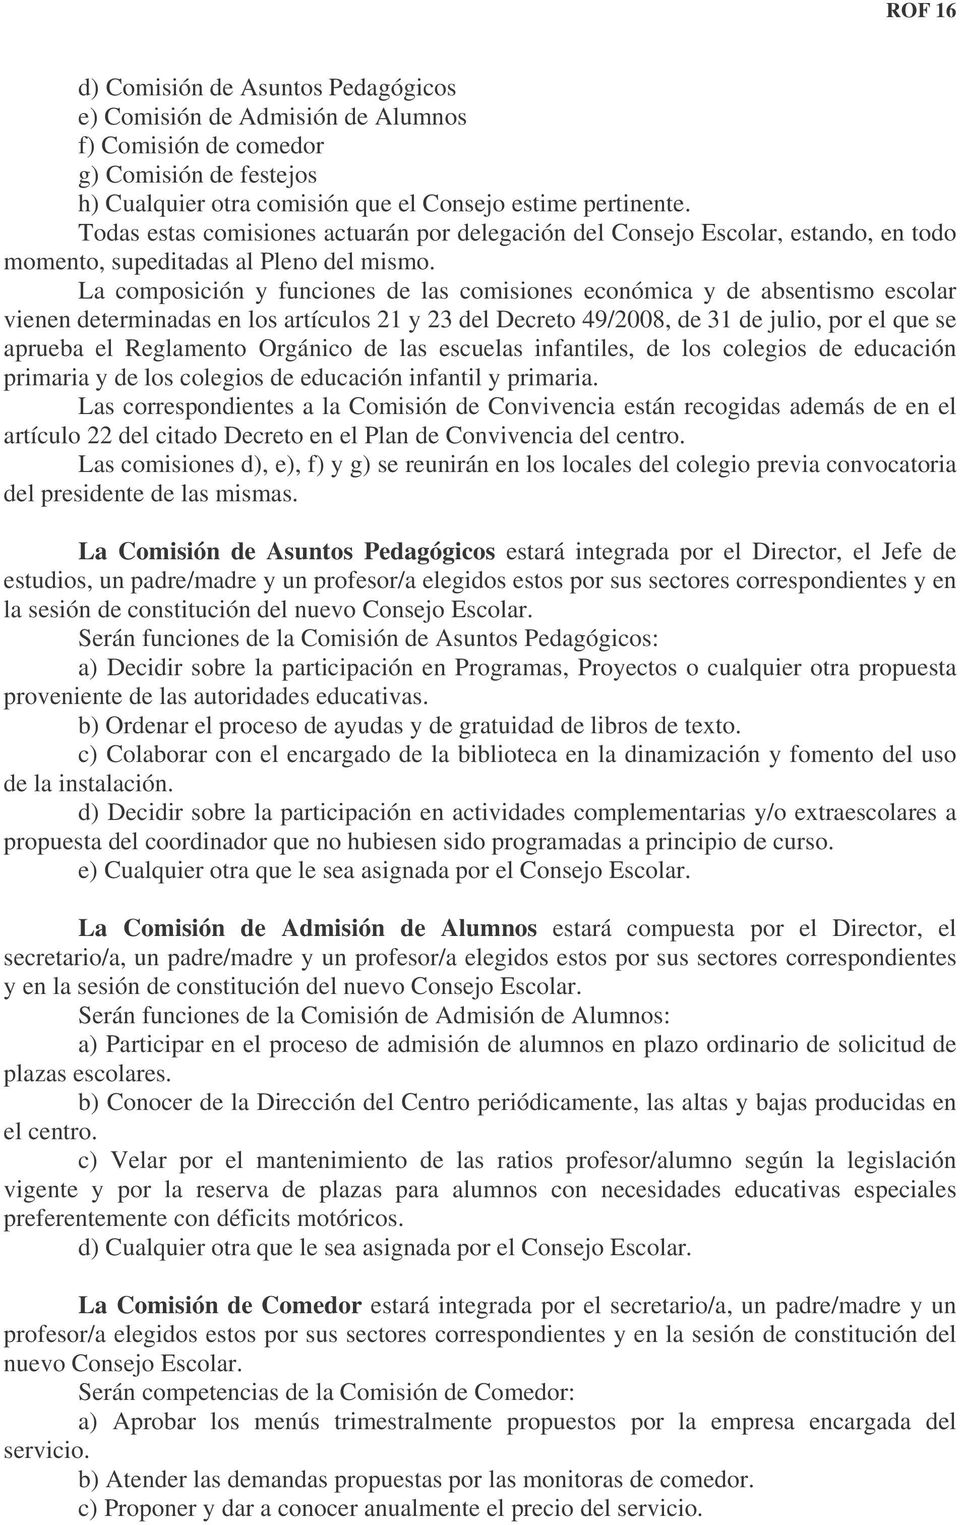 La composición y funciones de las comisiones económica y de absentismo escolar vienen determinadas en los artículos 21 y 23 del Decreto 49/2008, de 31 de julio, por el que se aprueba el Reglamento